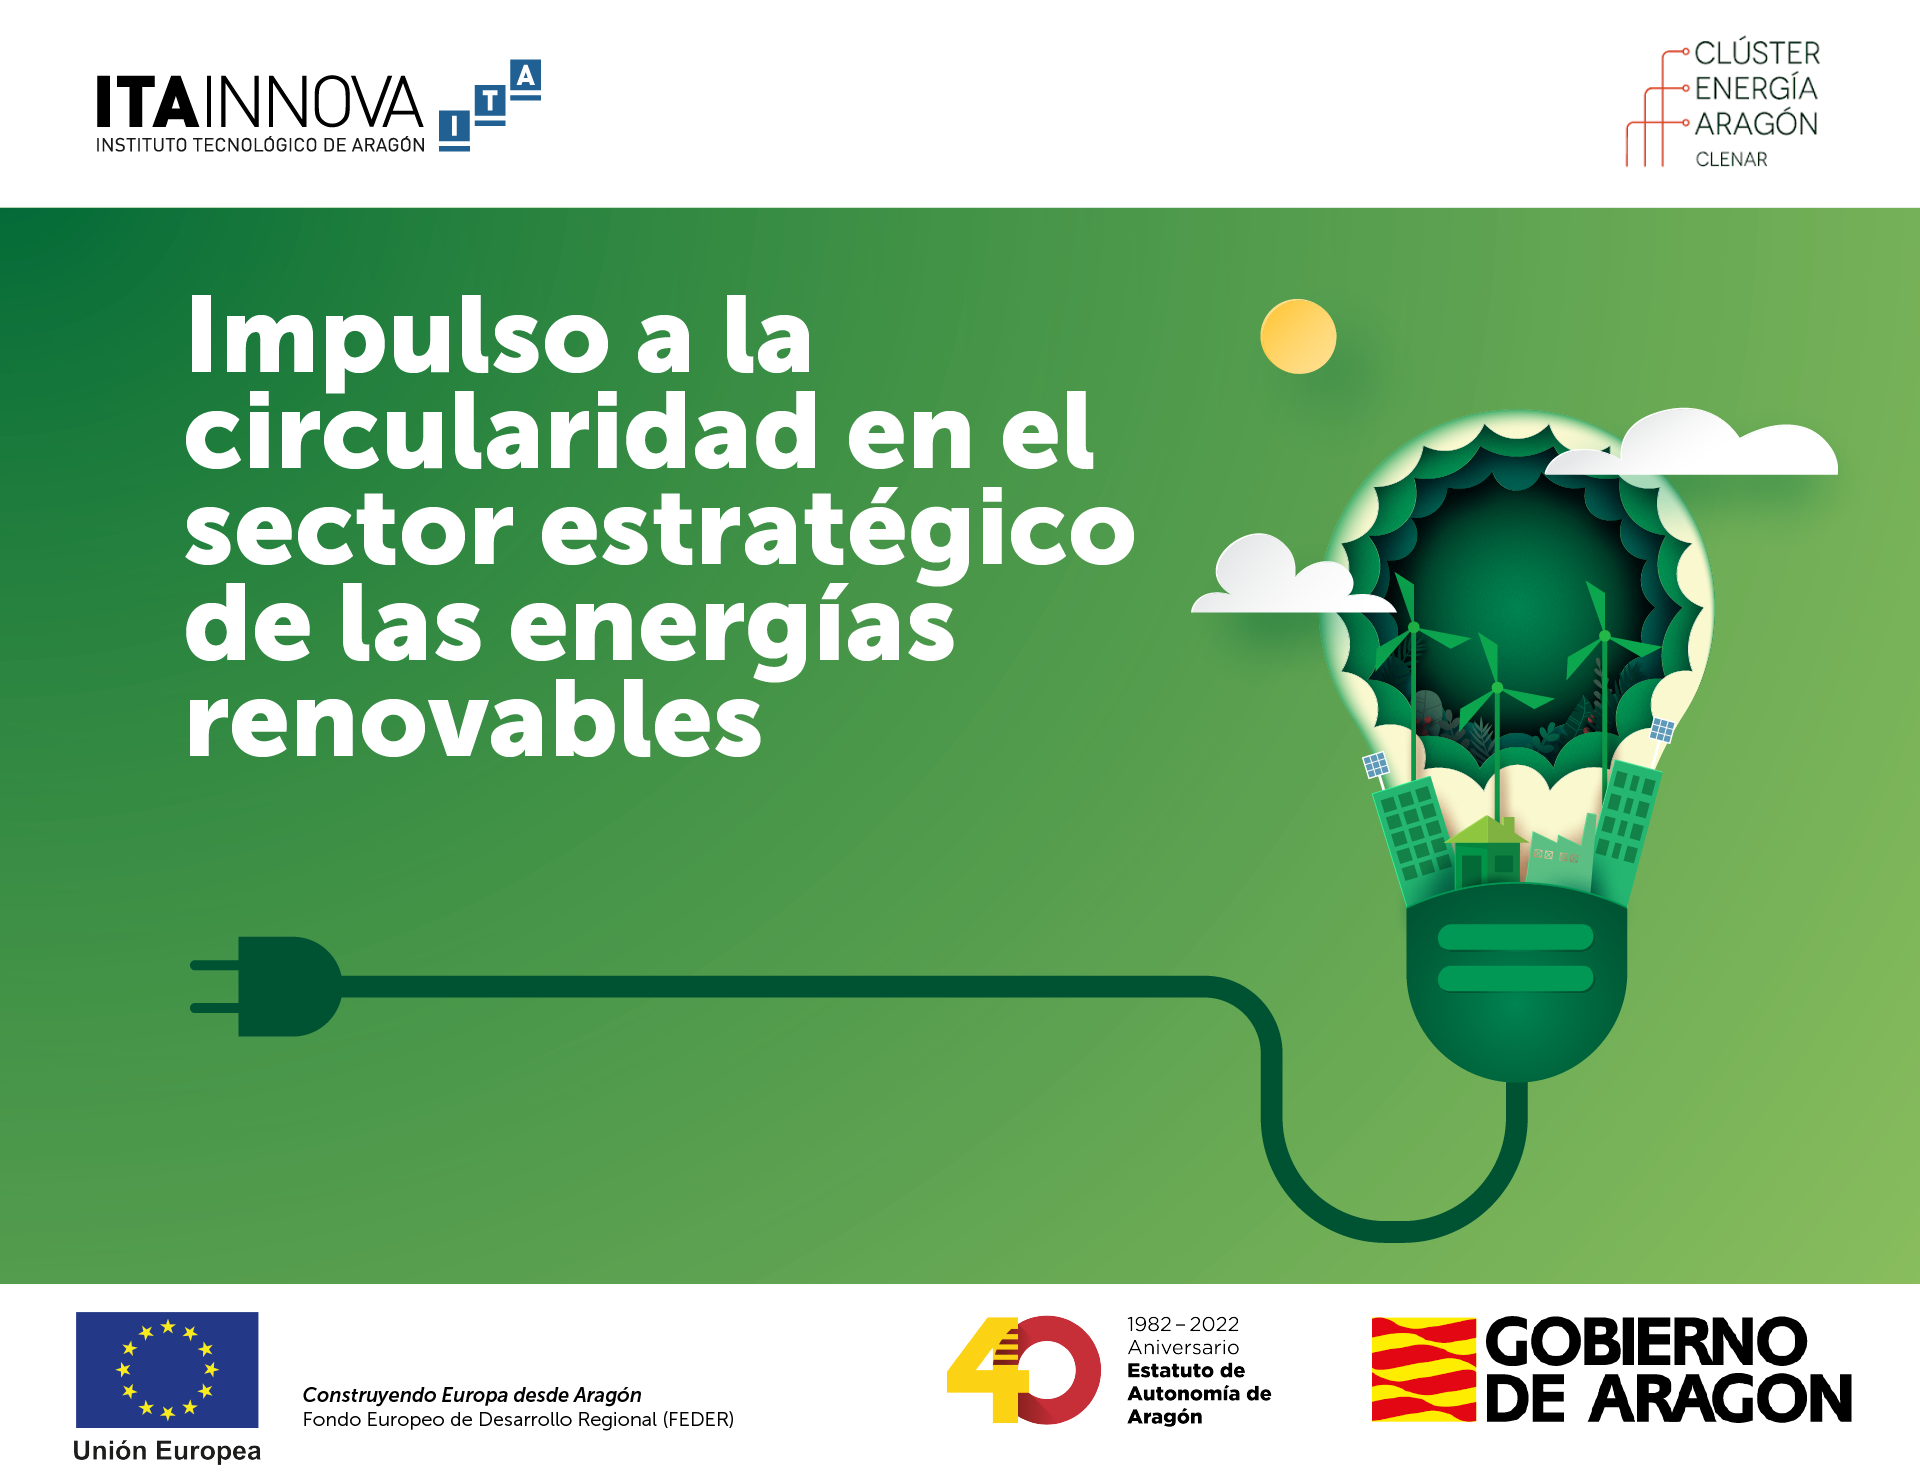 ITAINNOVA y CLENAR organizan una jornada dedicada al “Impulso a la circularidad en el sector estratégico de las energías renovables”